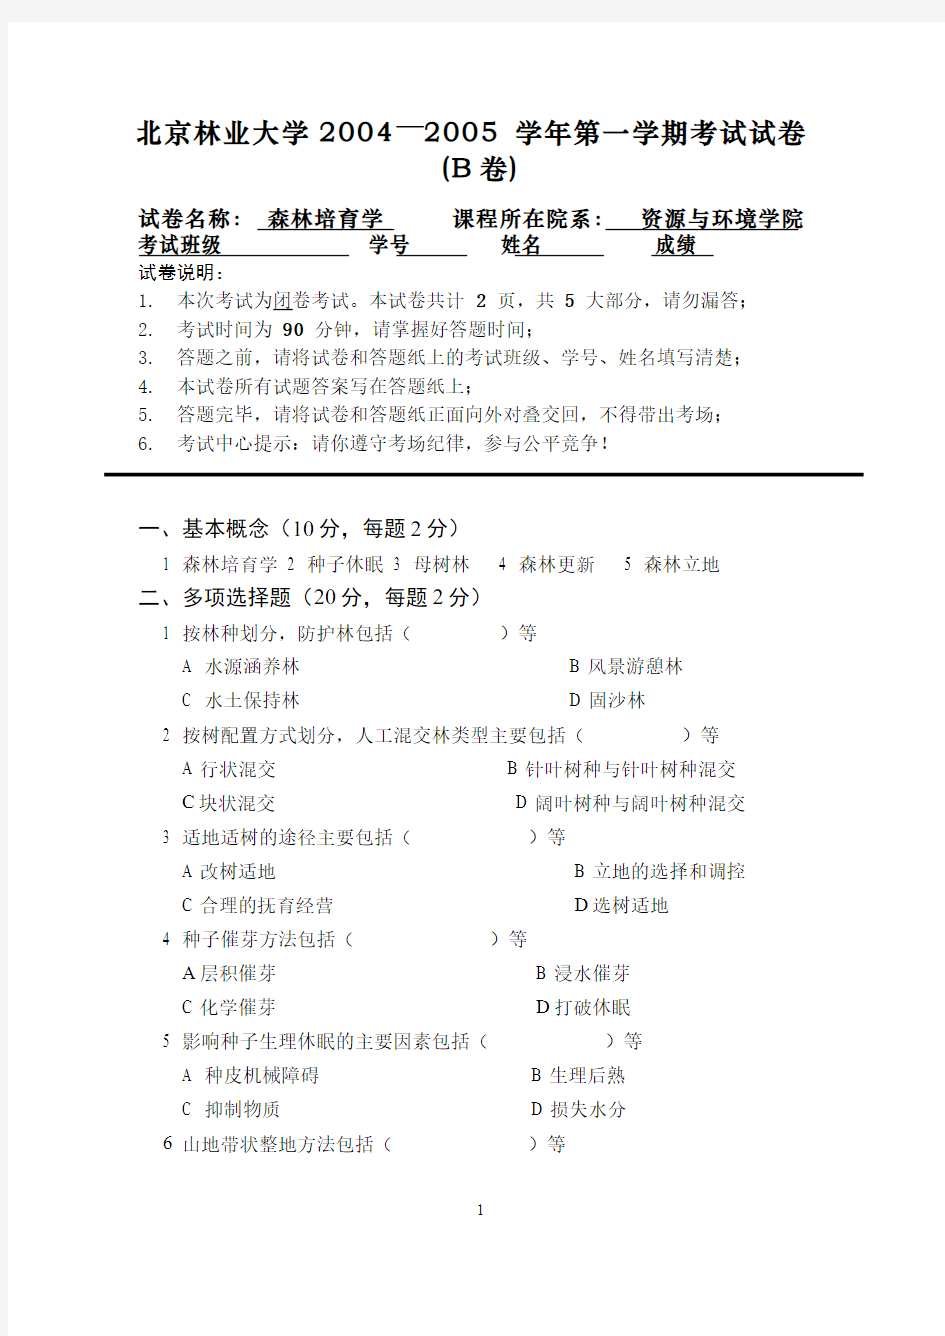 森林培育学__北京林业大学(3)--森林培育学课程期末考试2(试卷及答案题解)